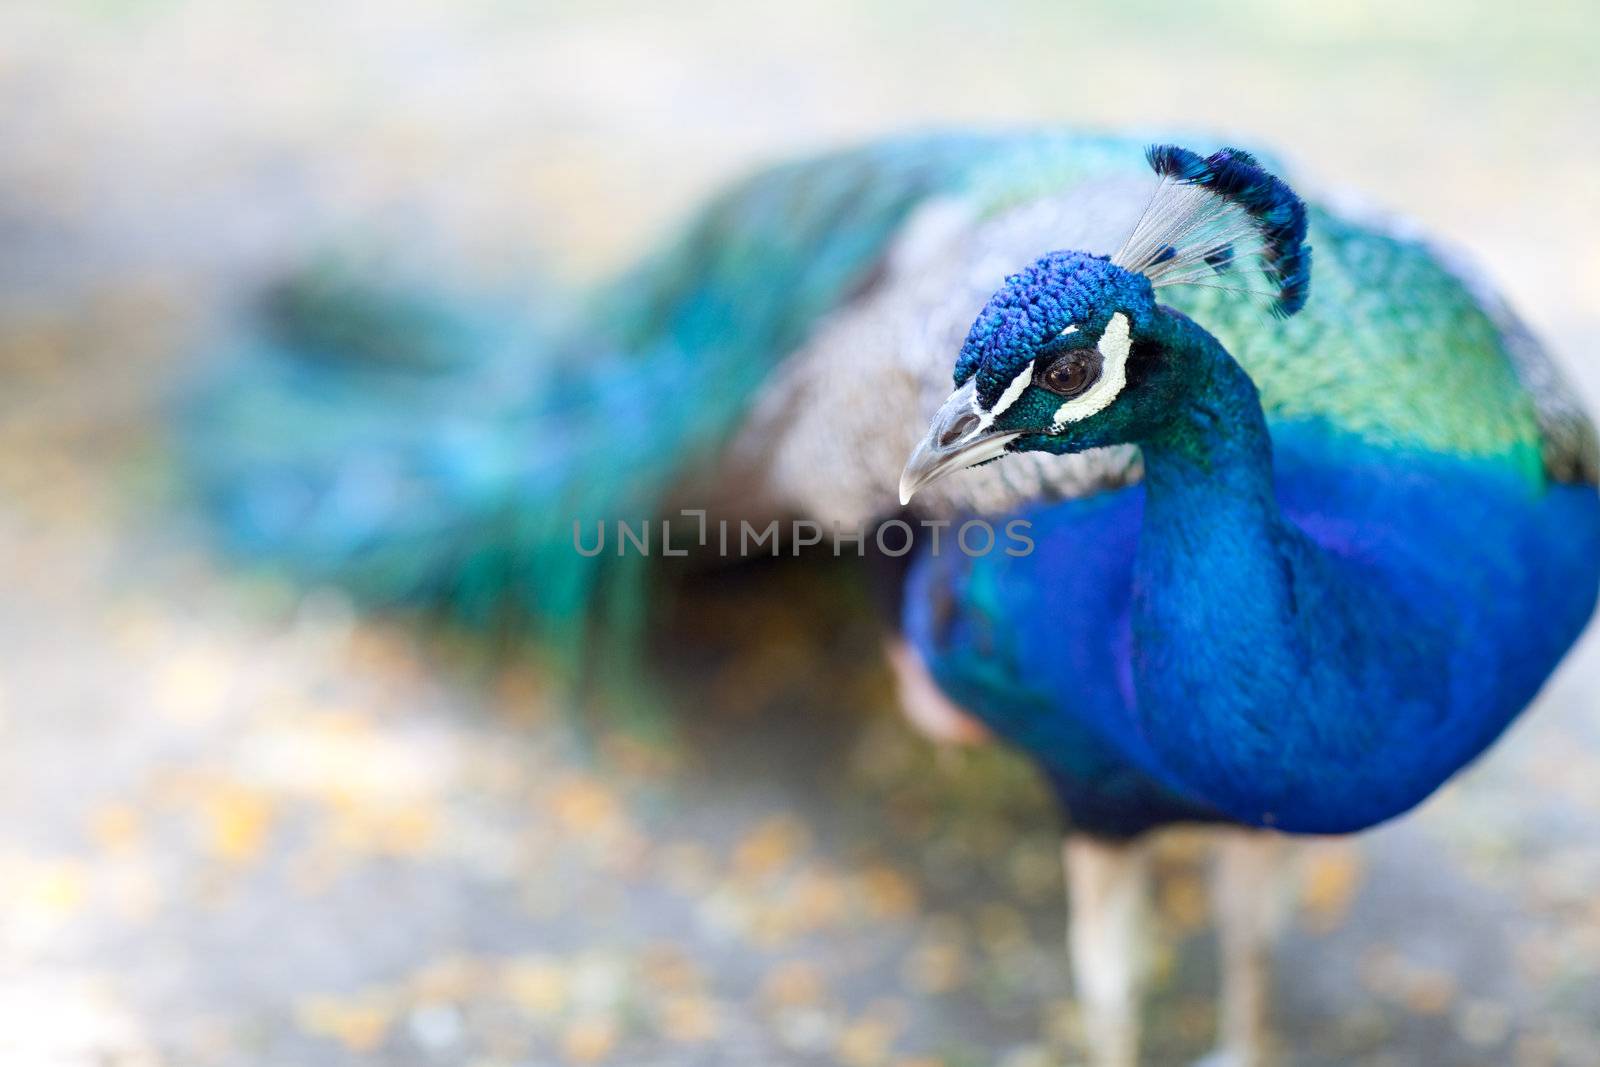 peacock - focus on the head